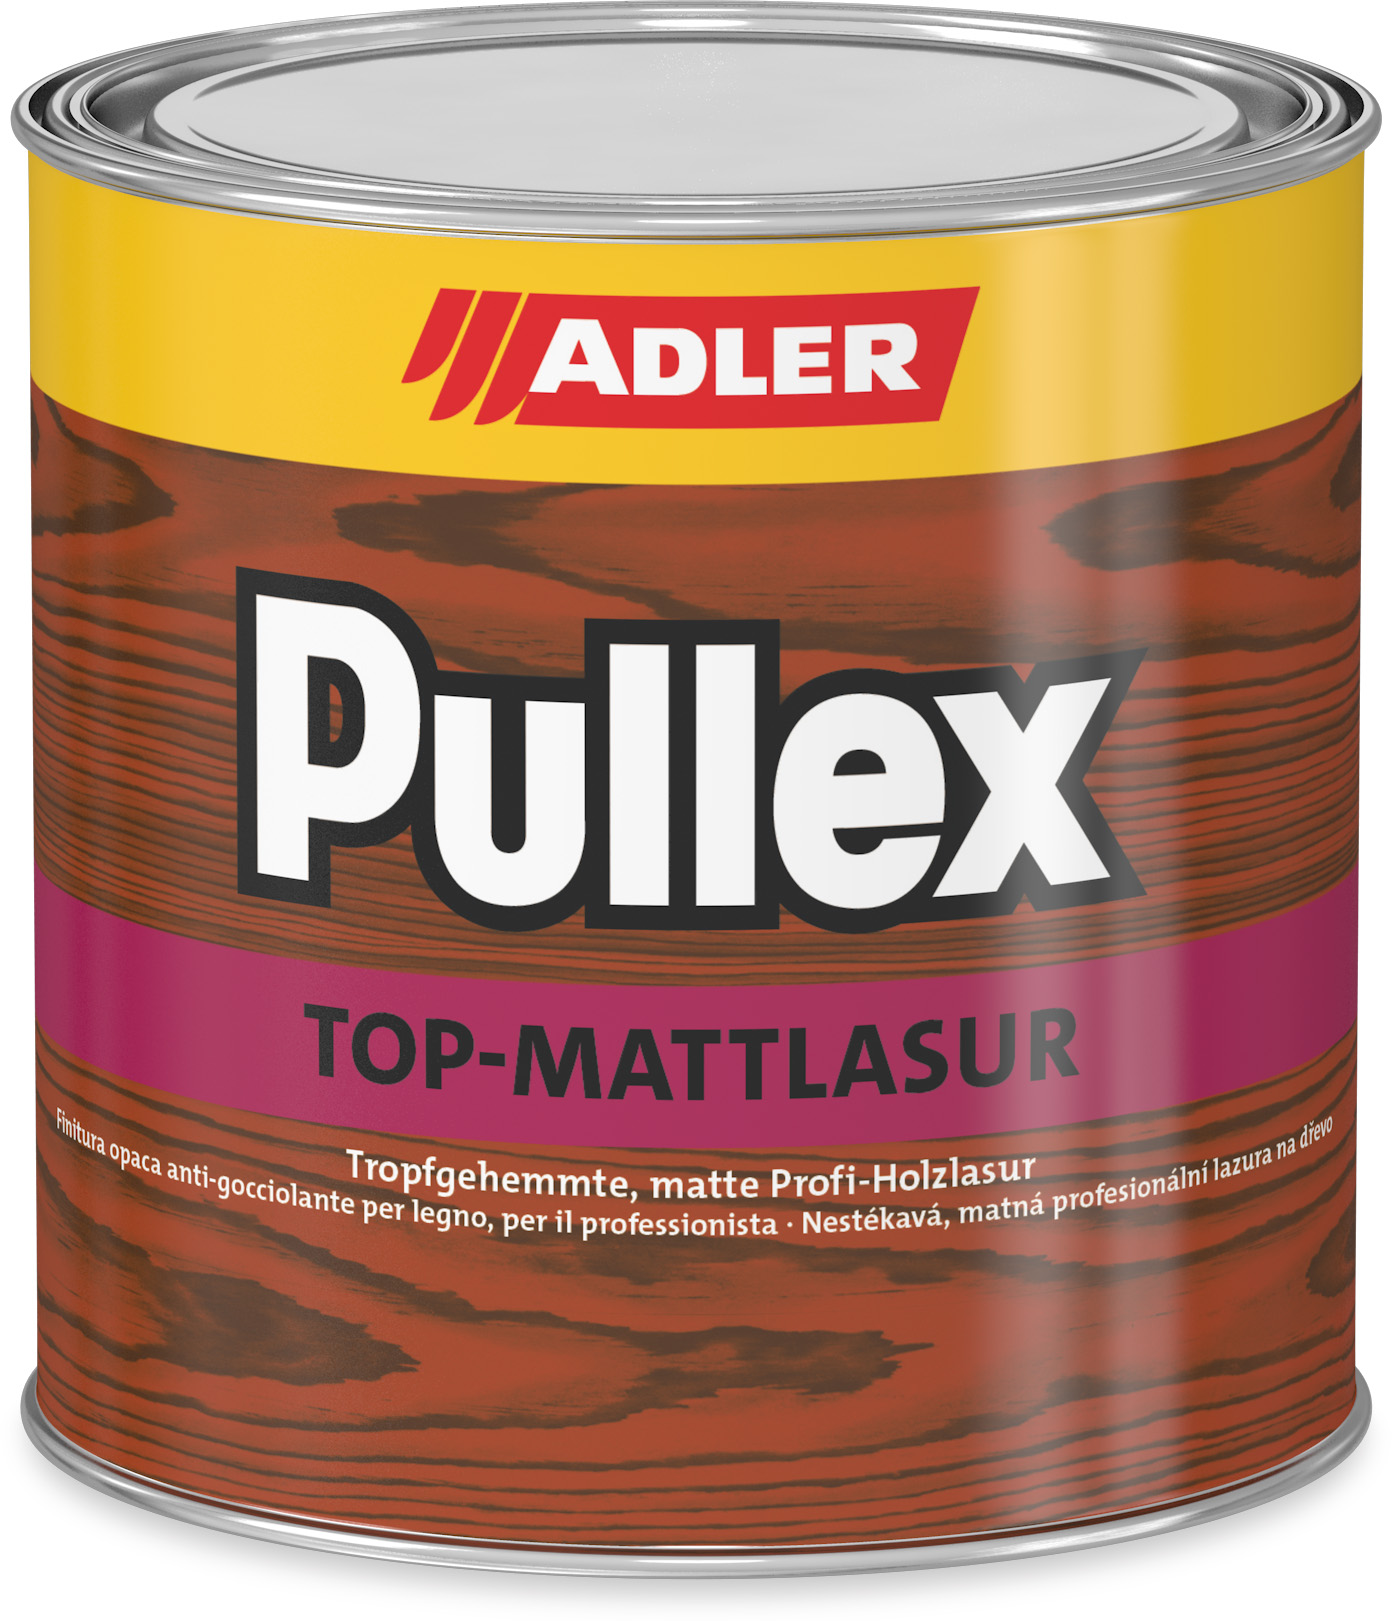 ADLER PULLEX TOP-MATT LASUR - Nestekavá tenkovrstvá lazúra 750 ml top lasur - orech